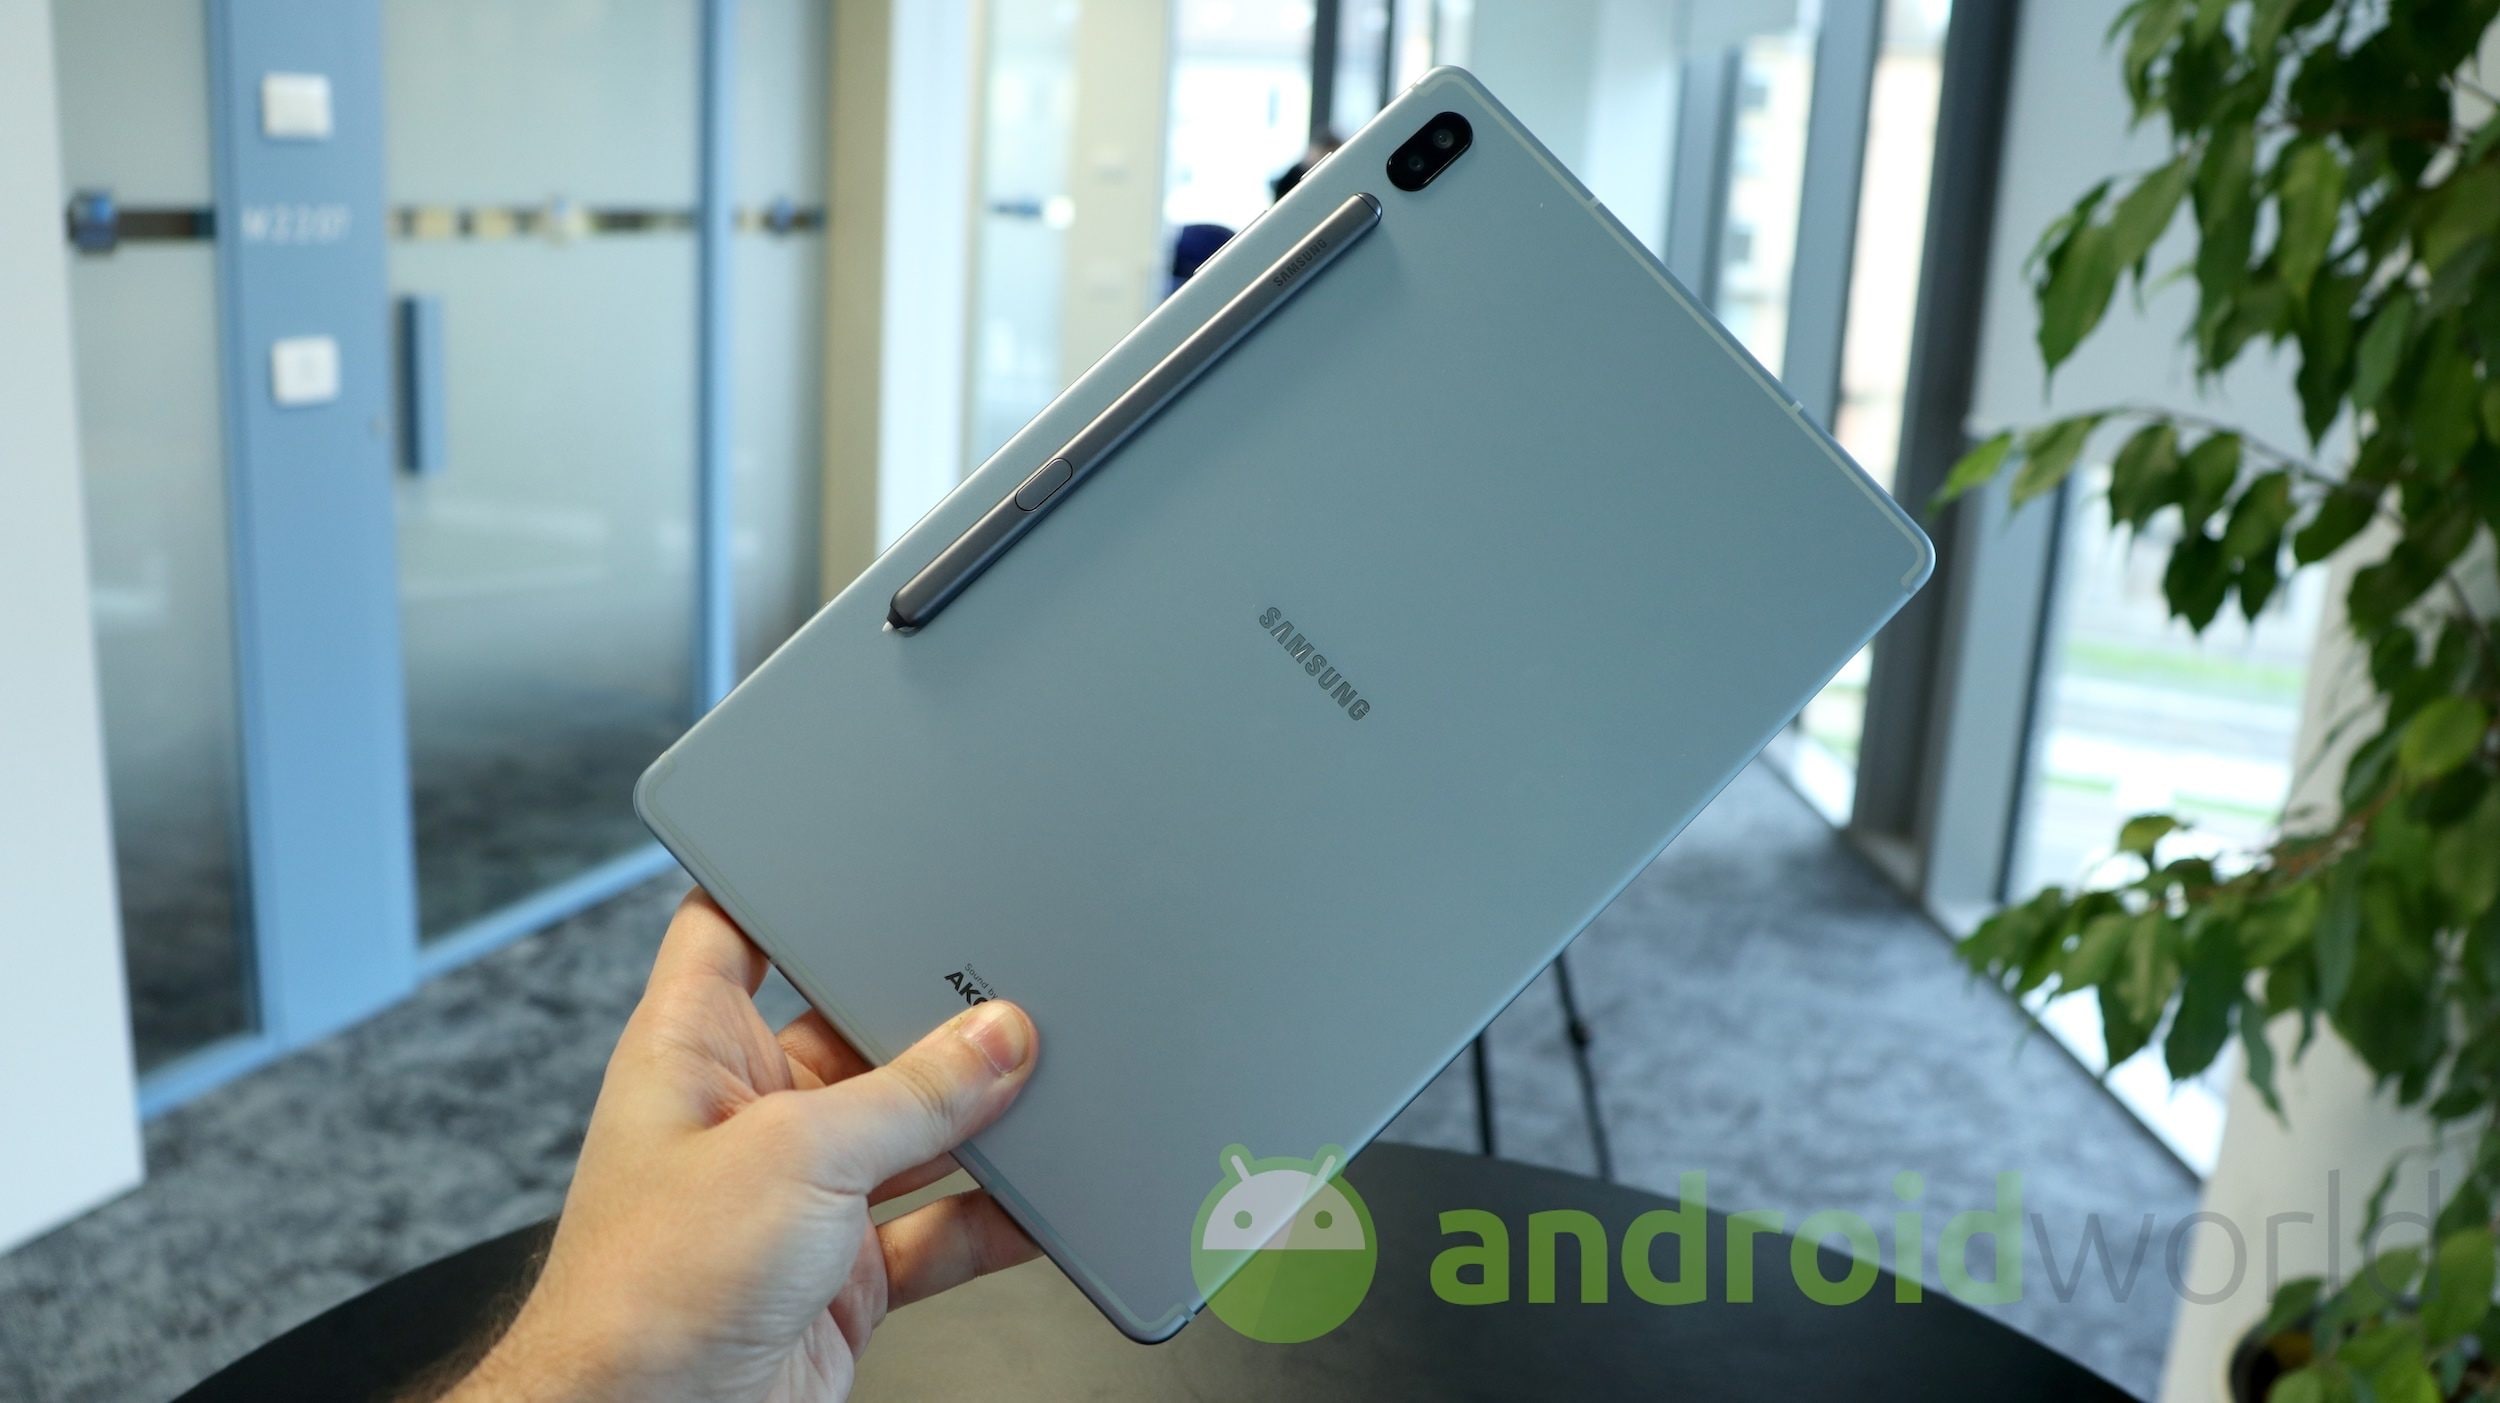 La versione 5G di Galaxy Tab S6 arriverà presto, almeno in Corea (foto)